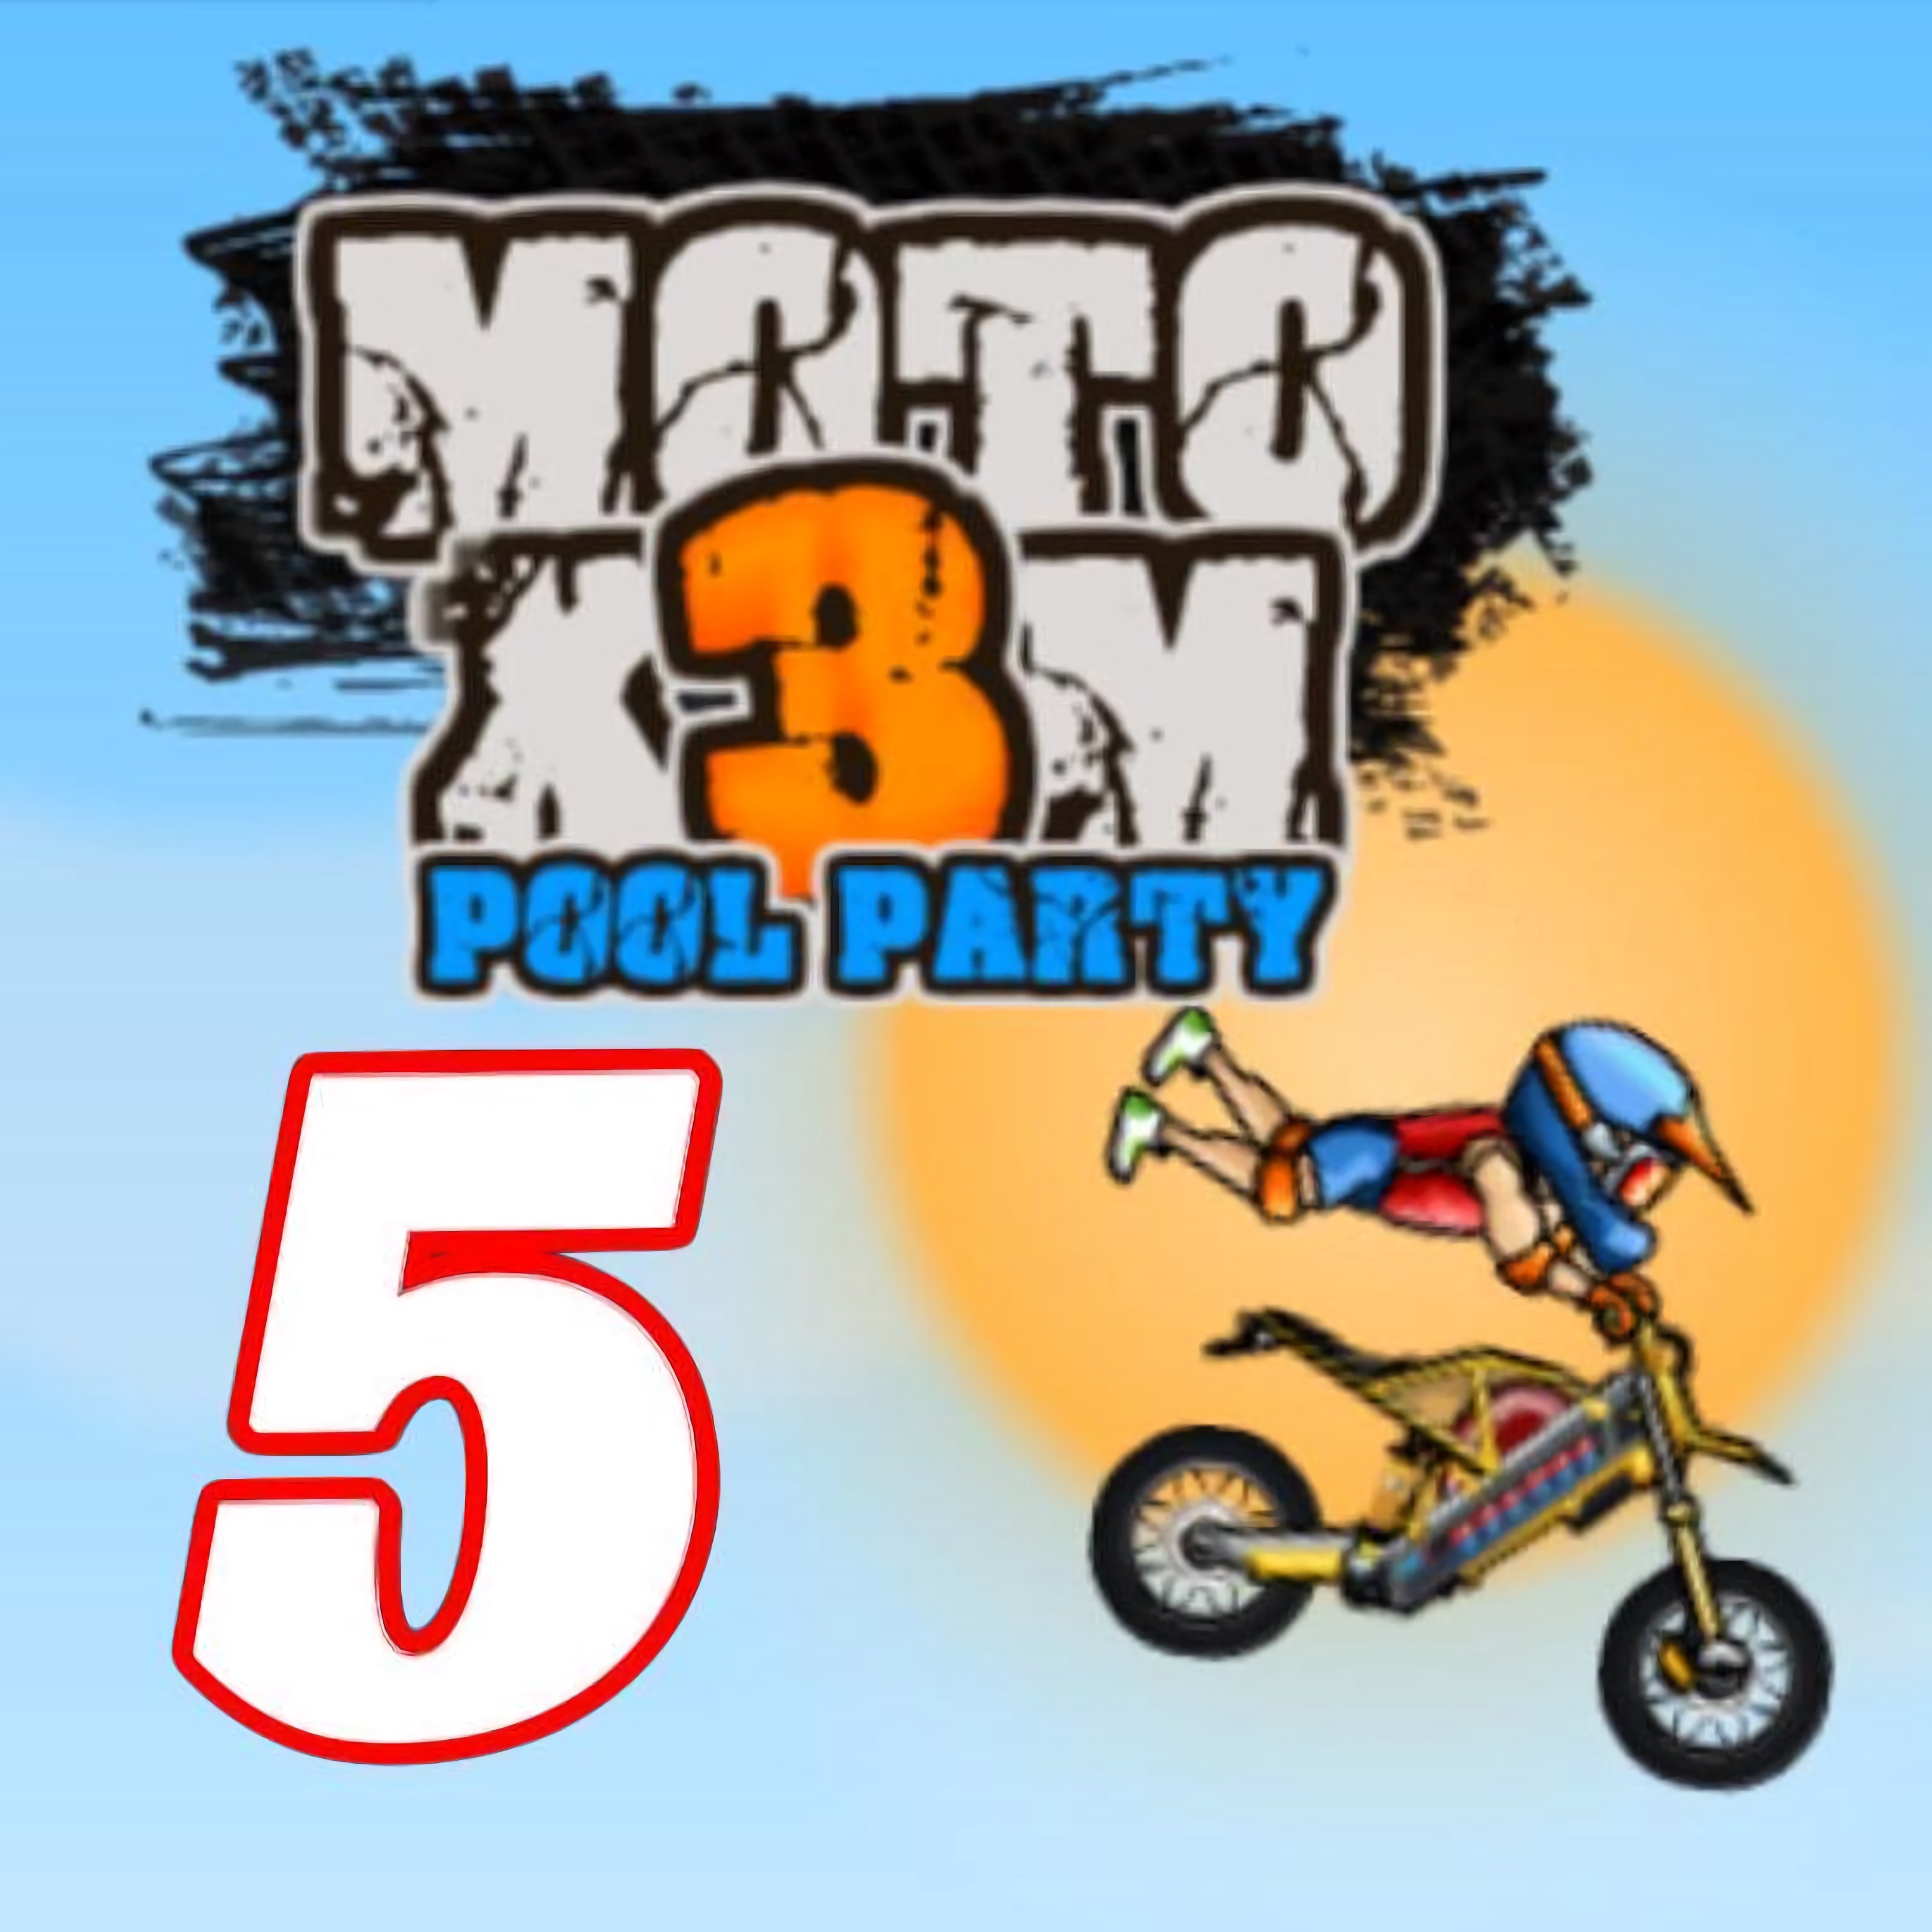 MOTO X3M 5 POOL PARTY - Jogue Grátis Online!